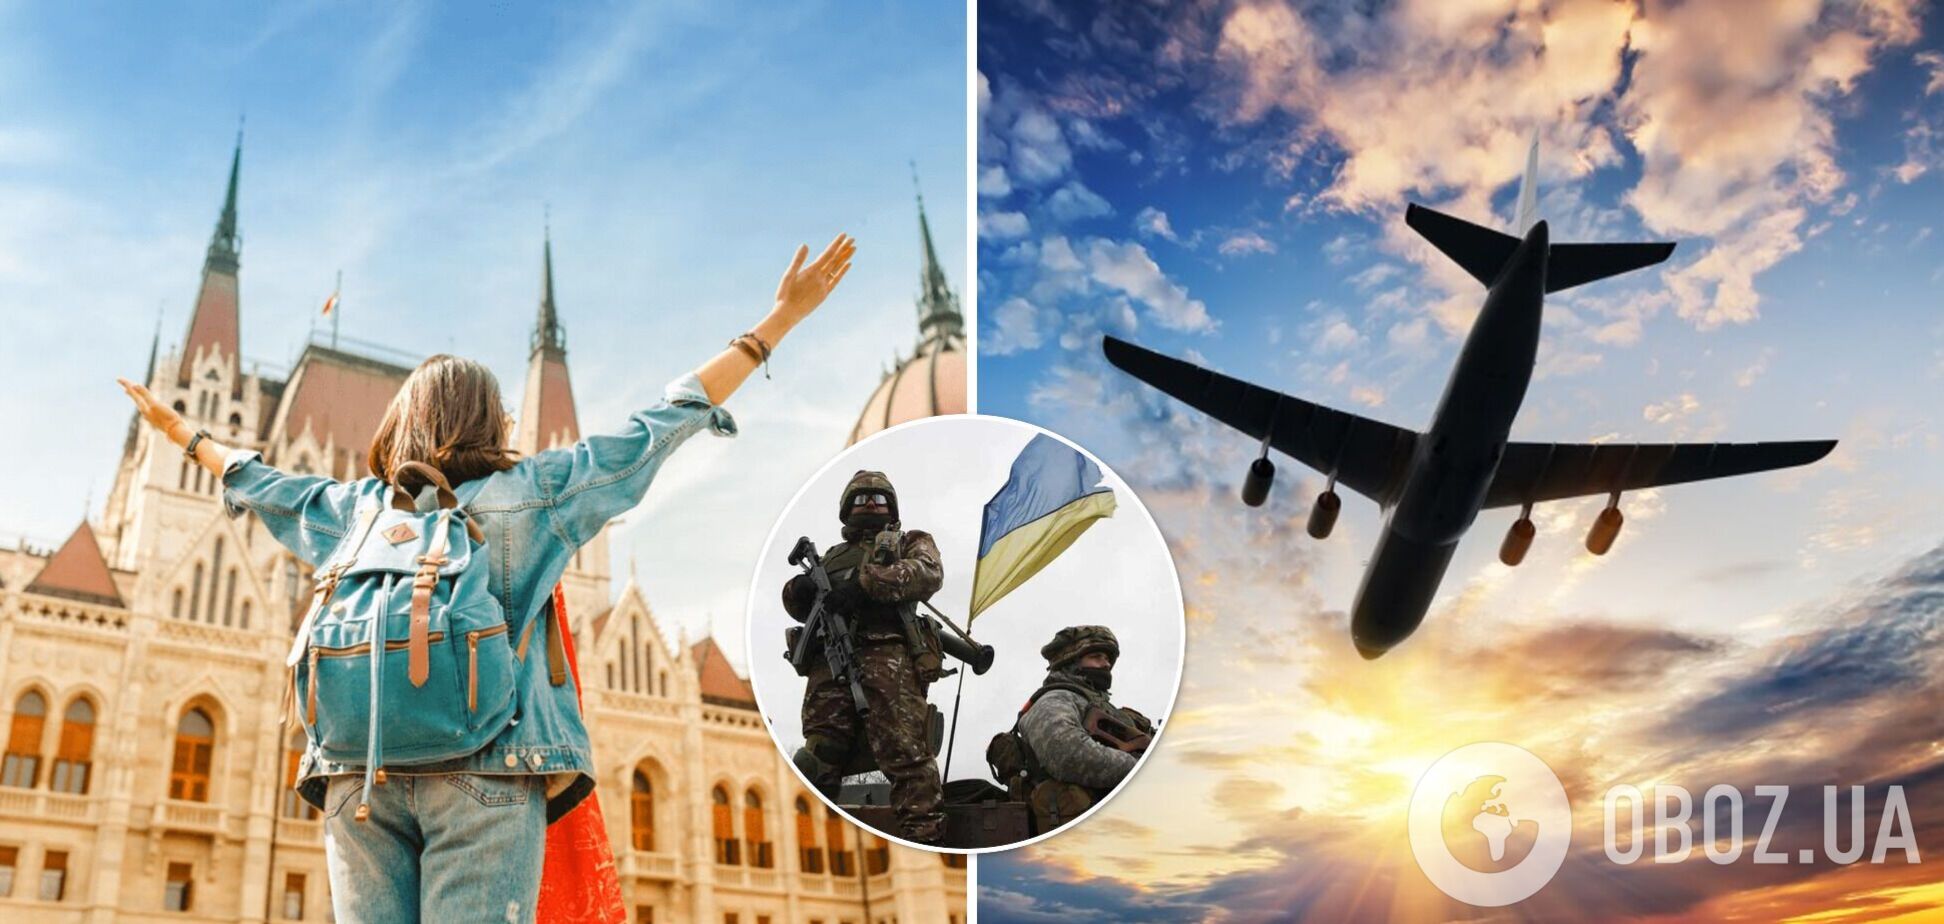 Европа из-за войны в Украине потеряла почти каждого второго туриста. Статистика